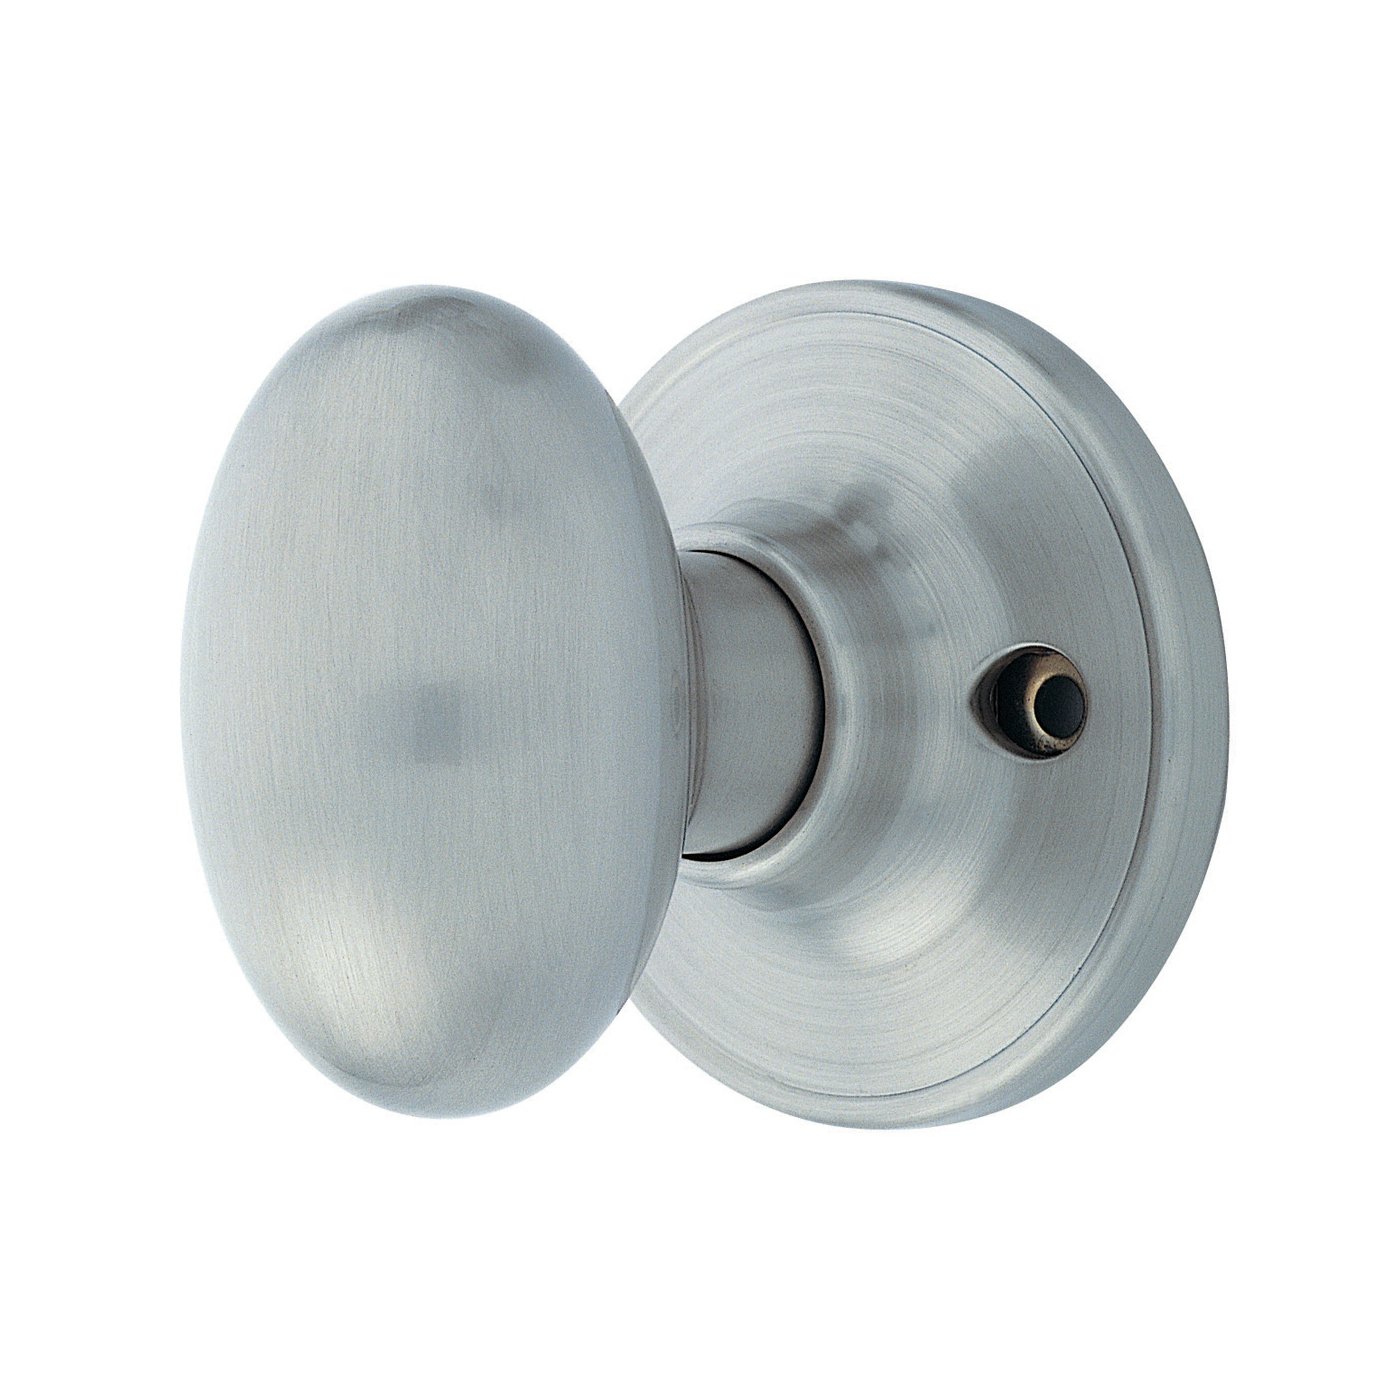 internal door knobs and handles photo - 6